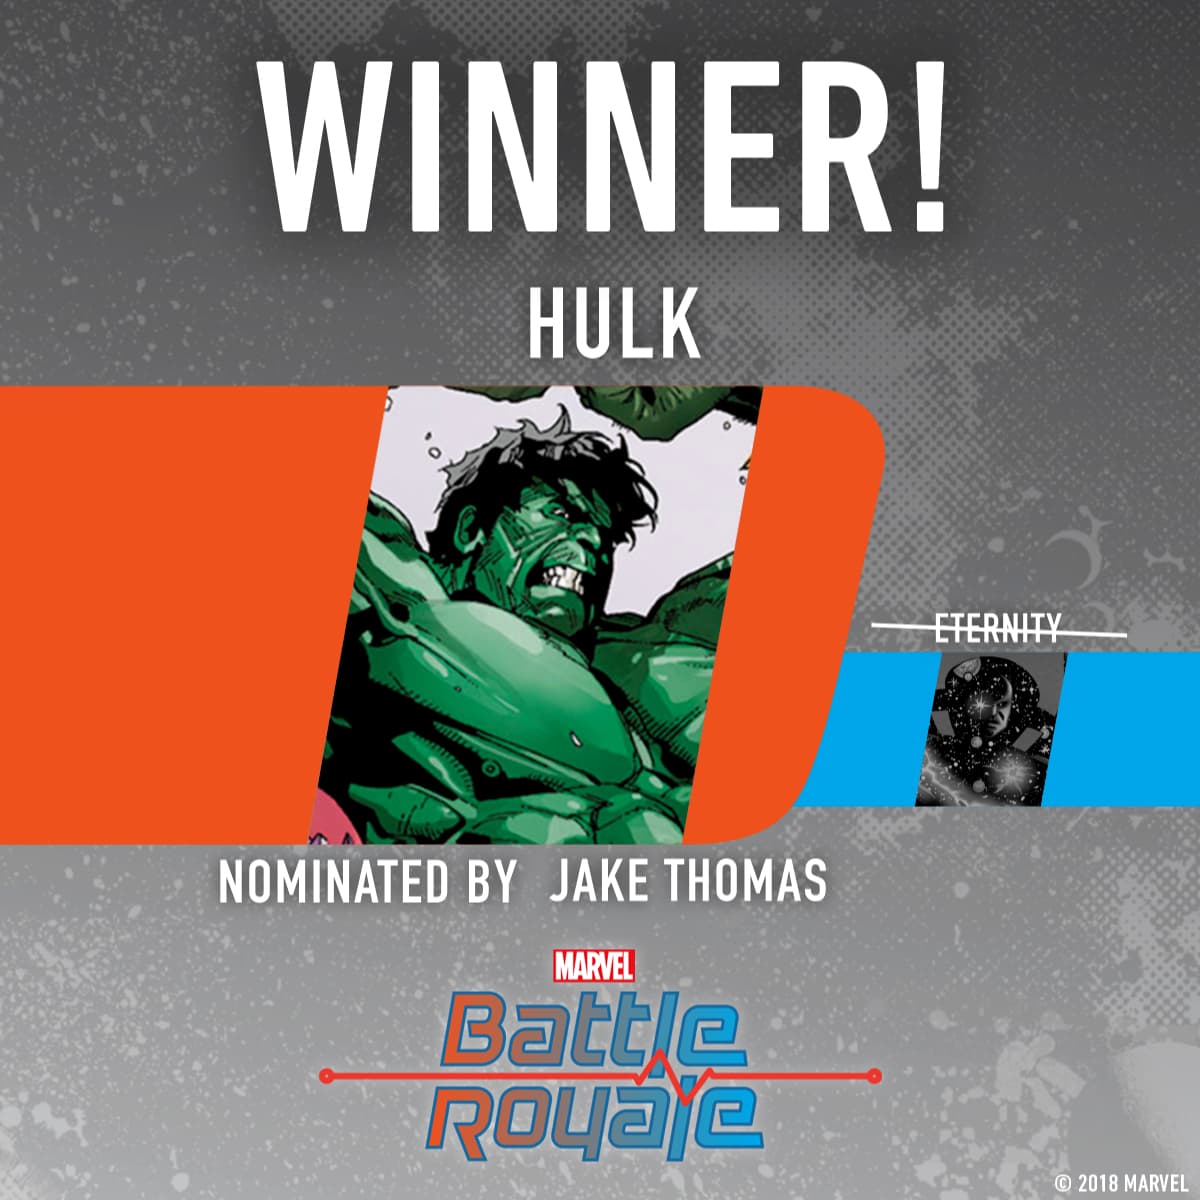 Hulk wins